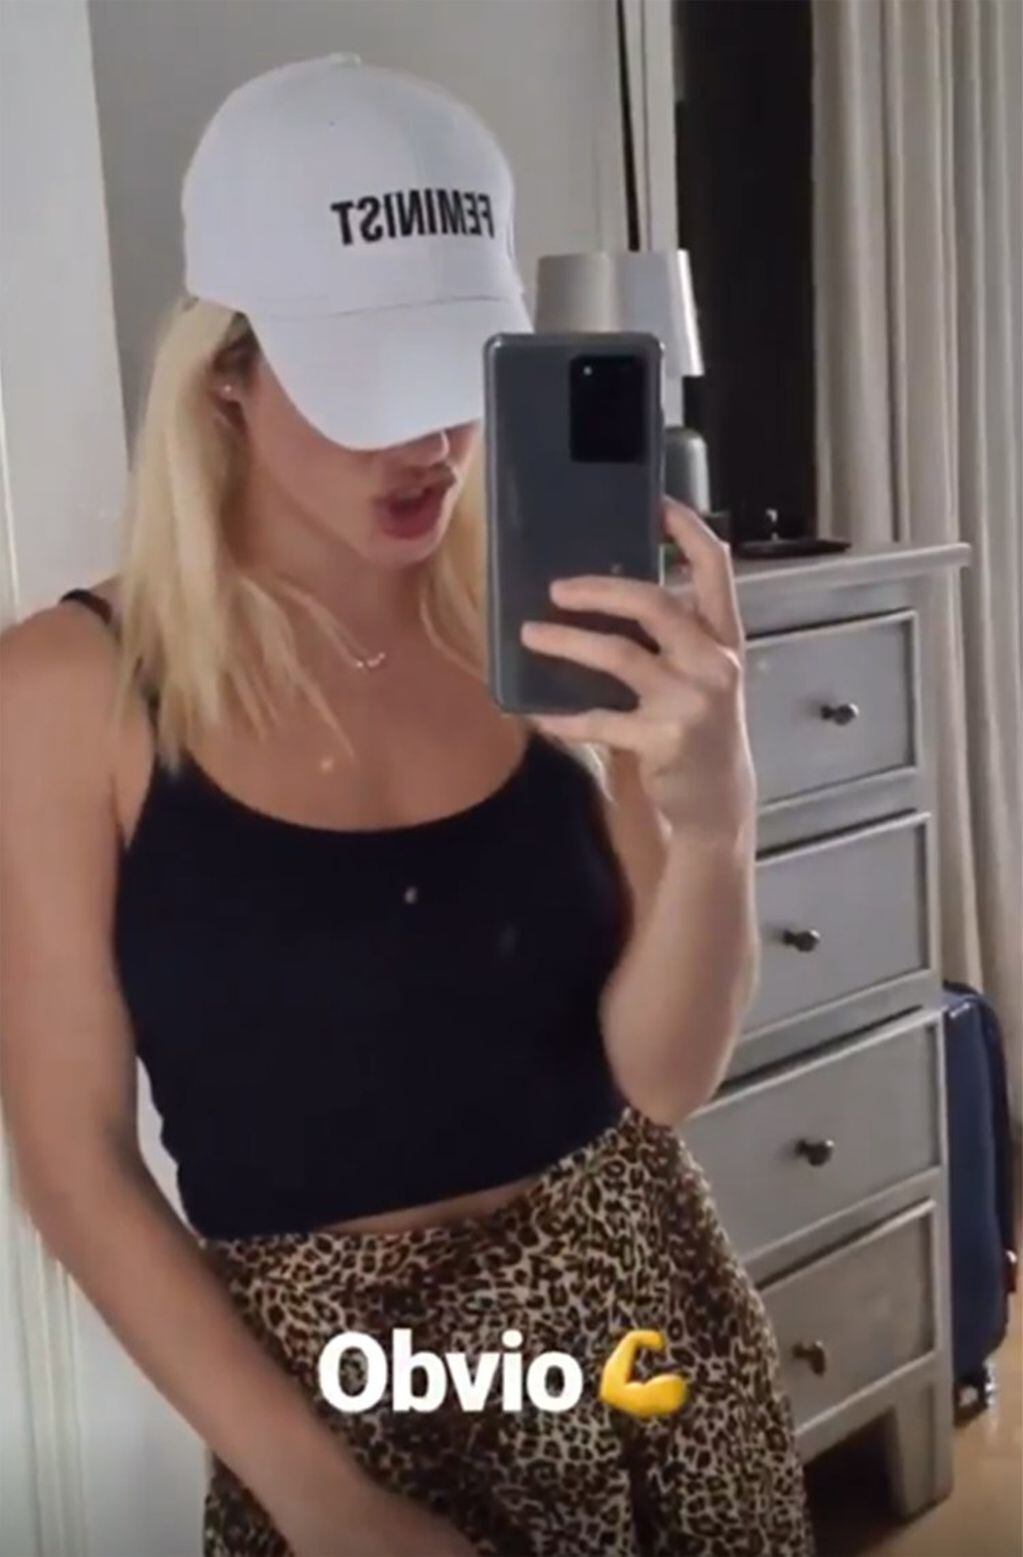 Lali Espósito subió una selfie recién llegada al complejo hotelero, con una gorra donde se lee la palabra "Feminist" ("Feminista").